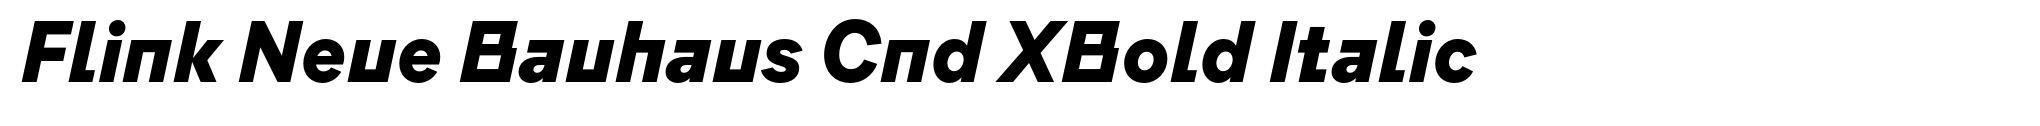 Flink Neue Bauhaus Cnd XBold Italic image